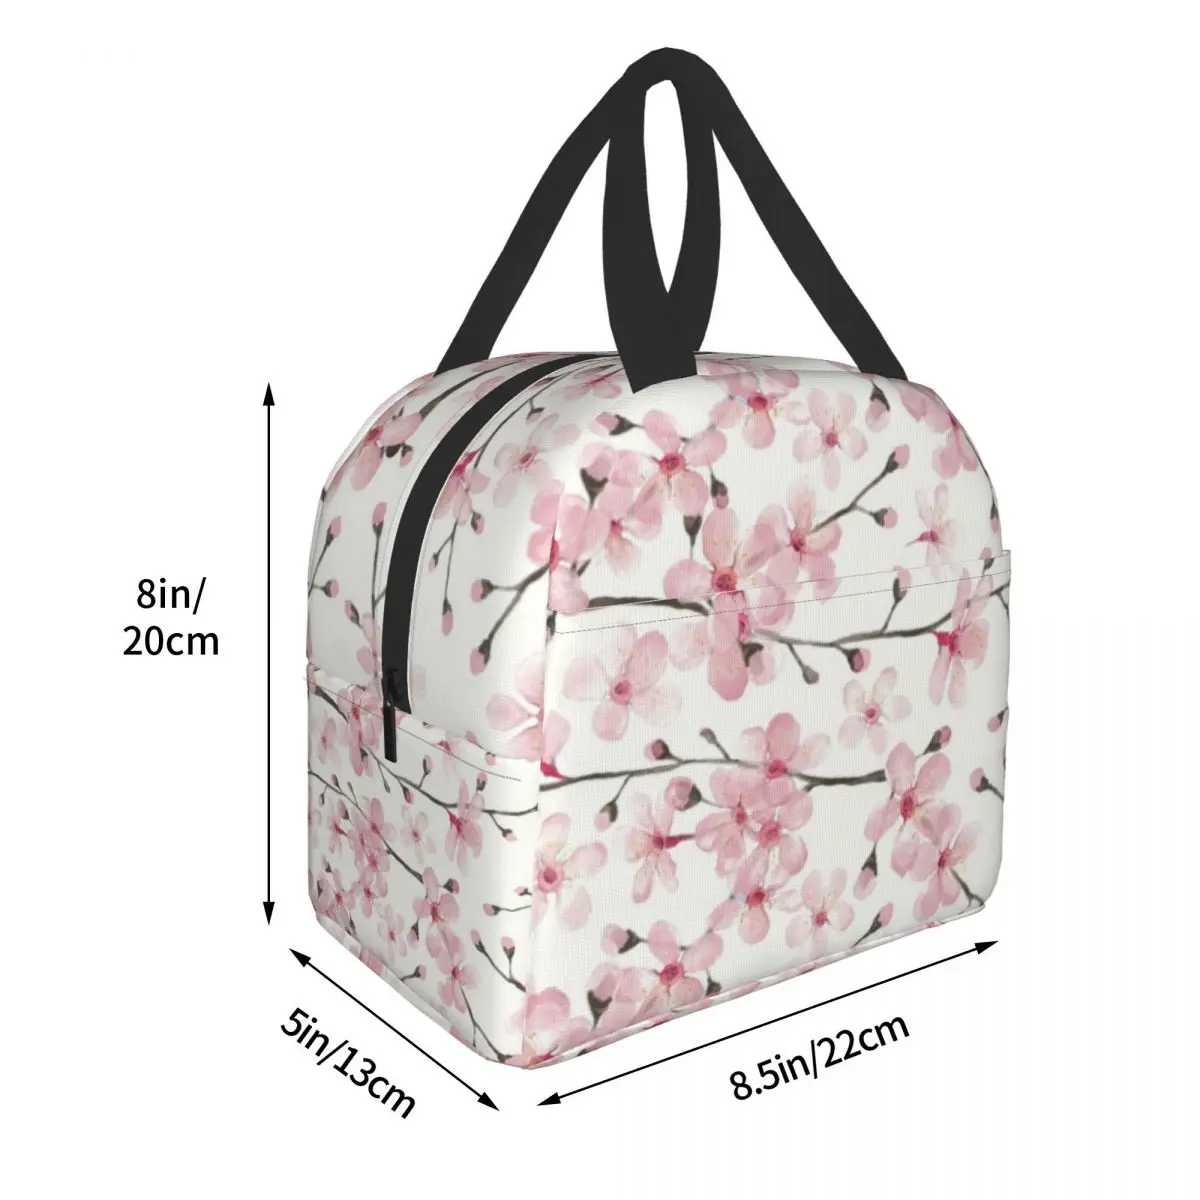 Японская вишневая изолированная сумка для ланча с цветочным рисунком, Многоразовый холодильник, термос для еды, Ланч-бокс для работы, учебы и путешествий Изображение 3